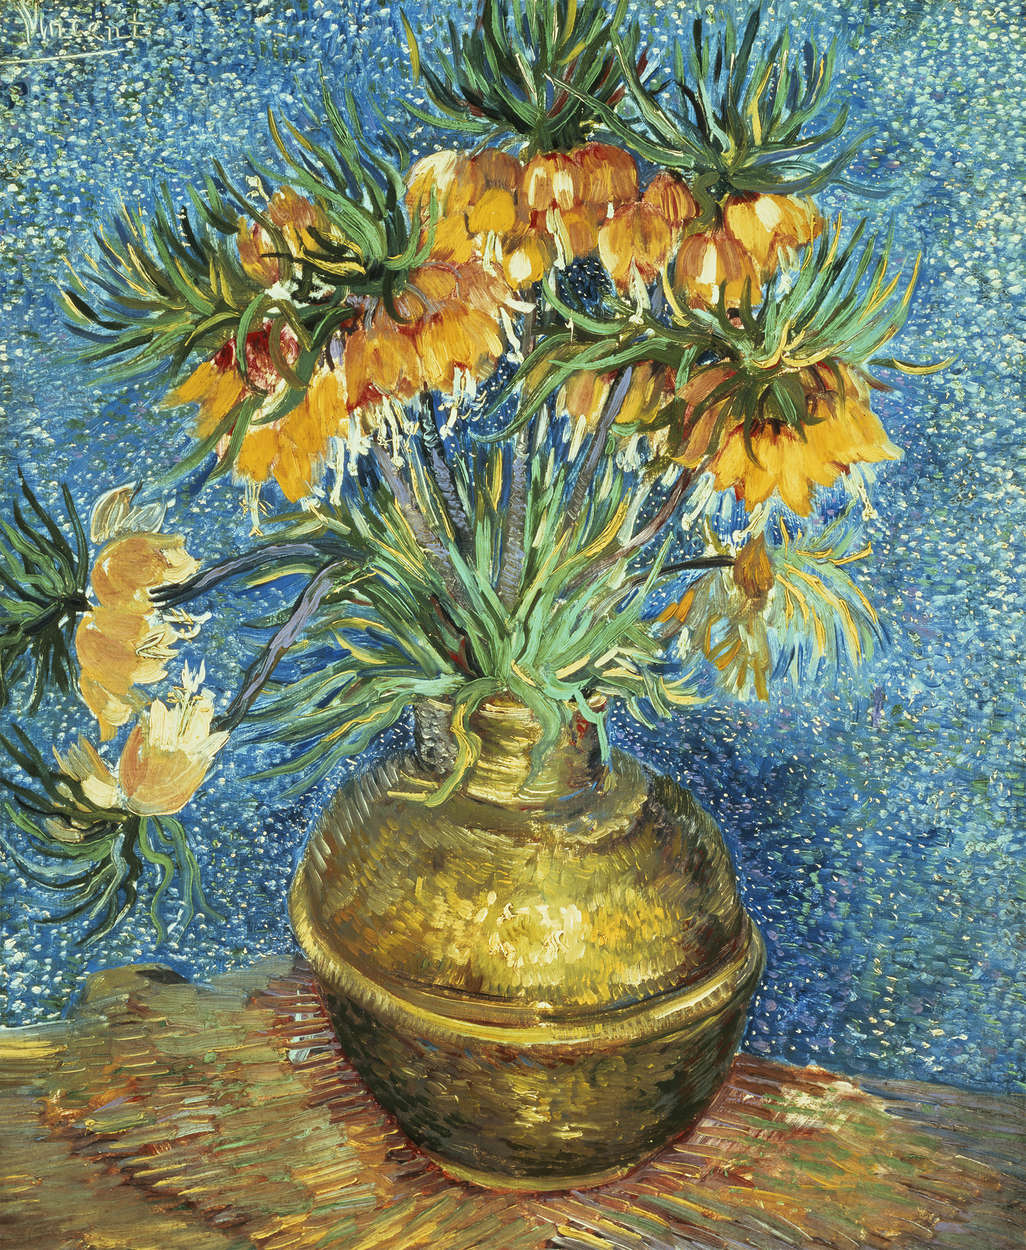             Papier peint "Fritillaria, couronne impériale dans un vase de cuivre " de Vincent van Gogh
        